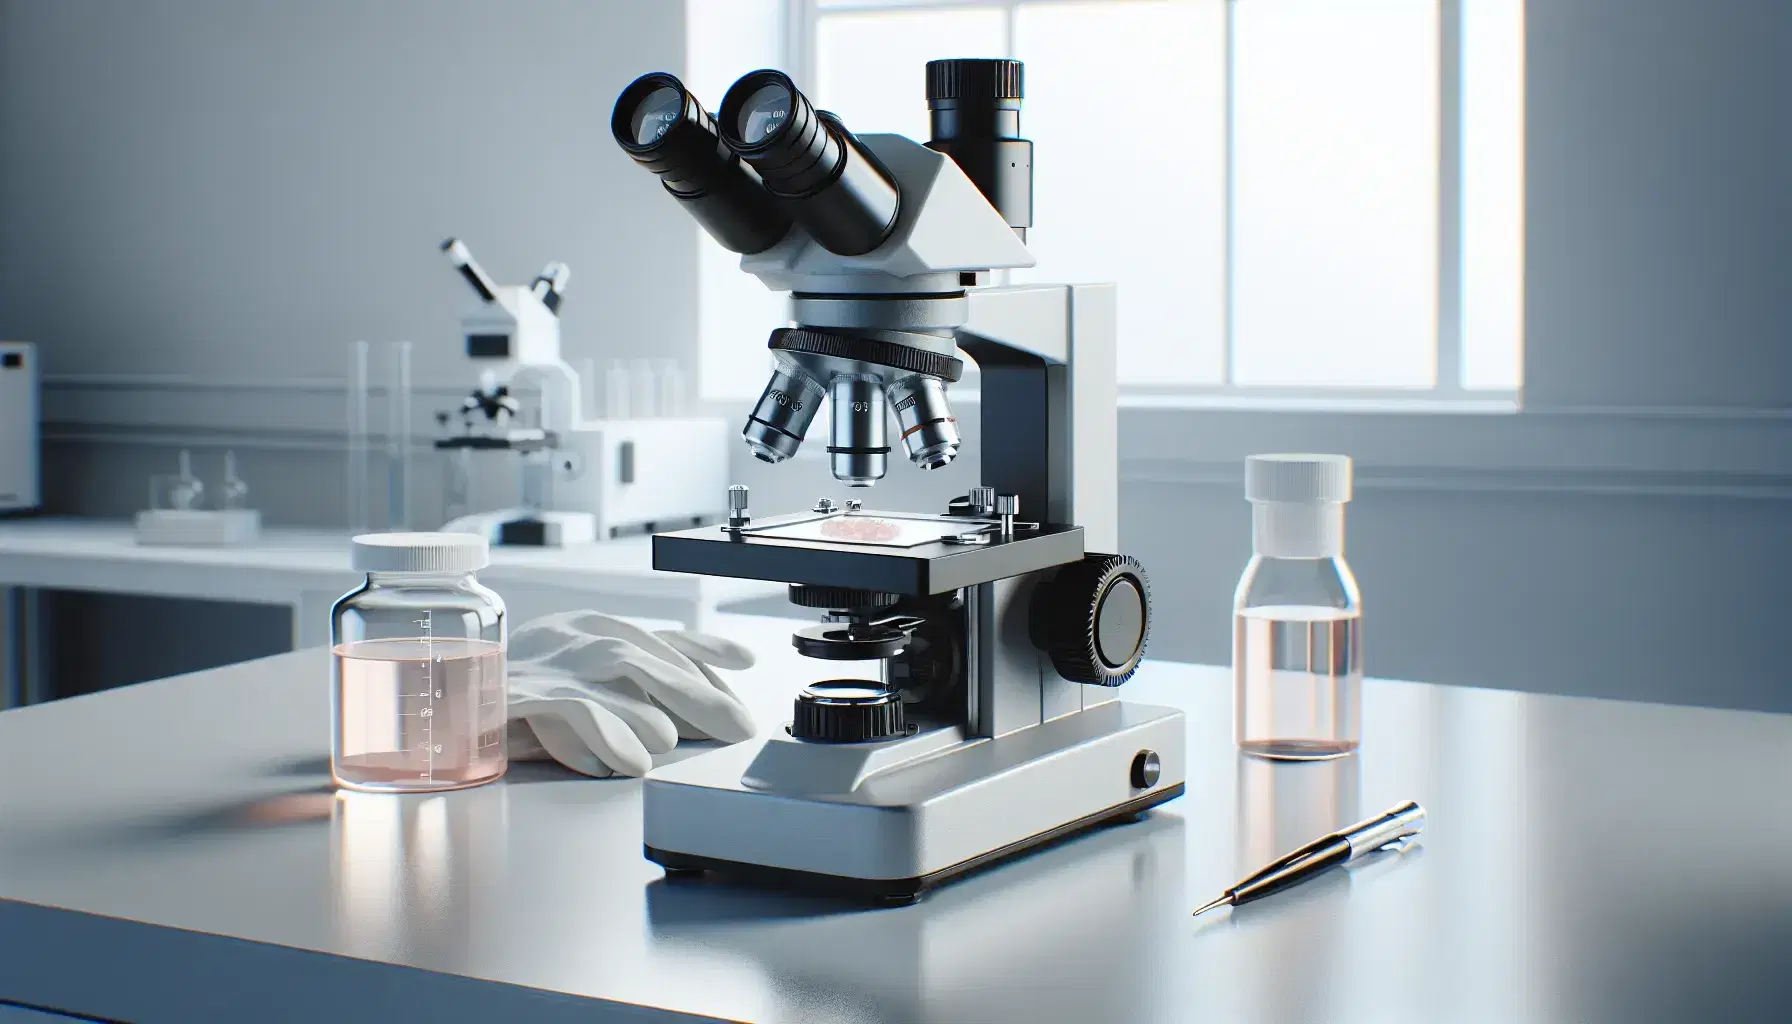 Microscopio moderno de laboratorio con objetivos de aumento sobre mesa blanca, muestra biológica en portaobjetos y guantes de látex al lado, en ambiente iluminado.